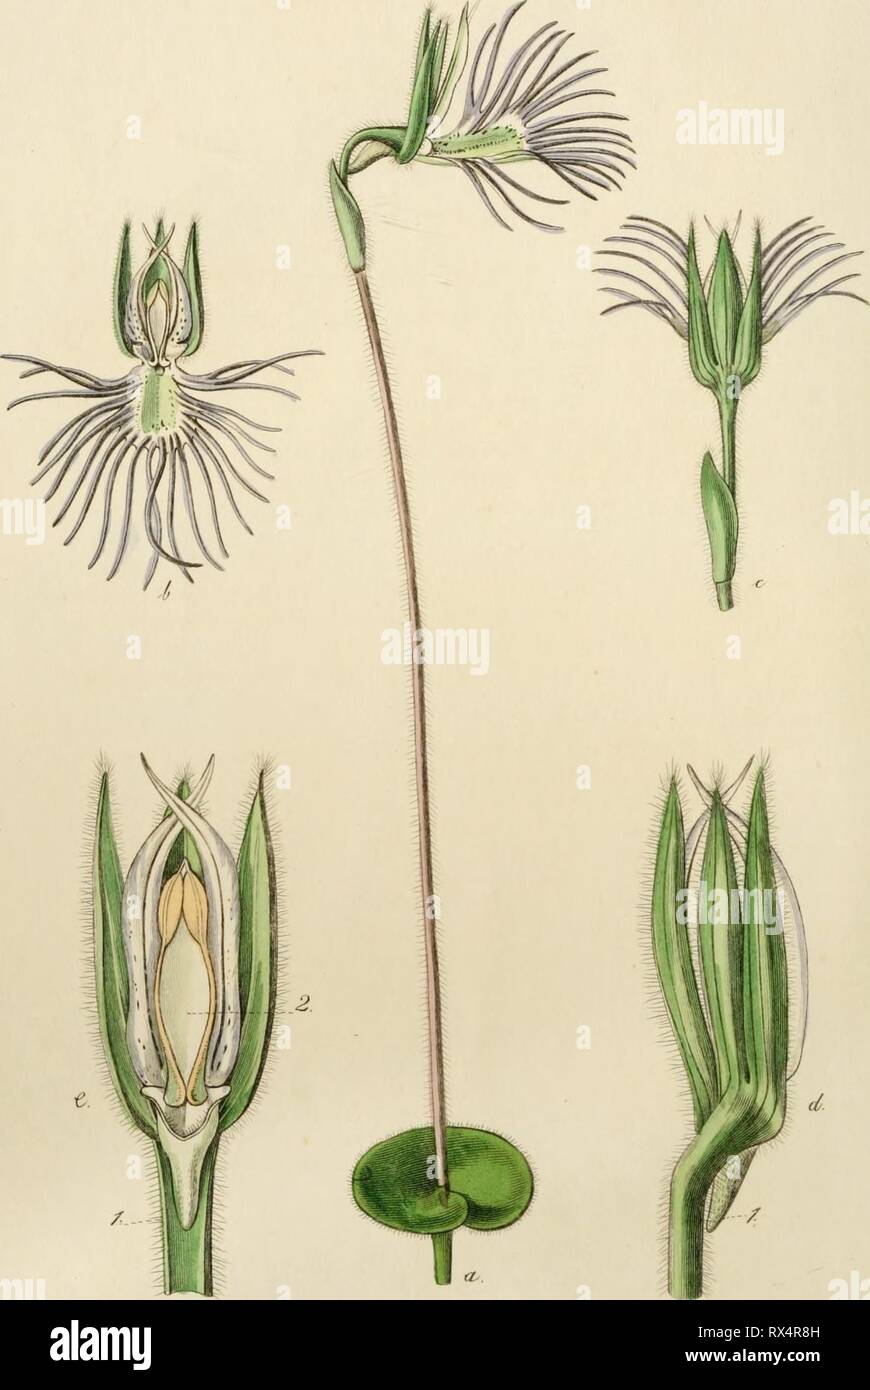 Edwards' botanische registrieren, oder Zierpflanzen Edwards' botanische registrieren, oder, ornamentalen Blumen - Garten und Gebüsch.. edwardsbotanical 20 edwa Jahr: 1829-1847 'DJ 3. ." Fliegen^^ t. zAc. c^^. .^S^i^X^c^u "i^/ff ^^e^M^Maacl. /./(^s^. y!"^^.^- Stockfoto